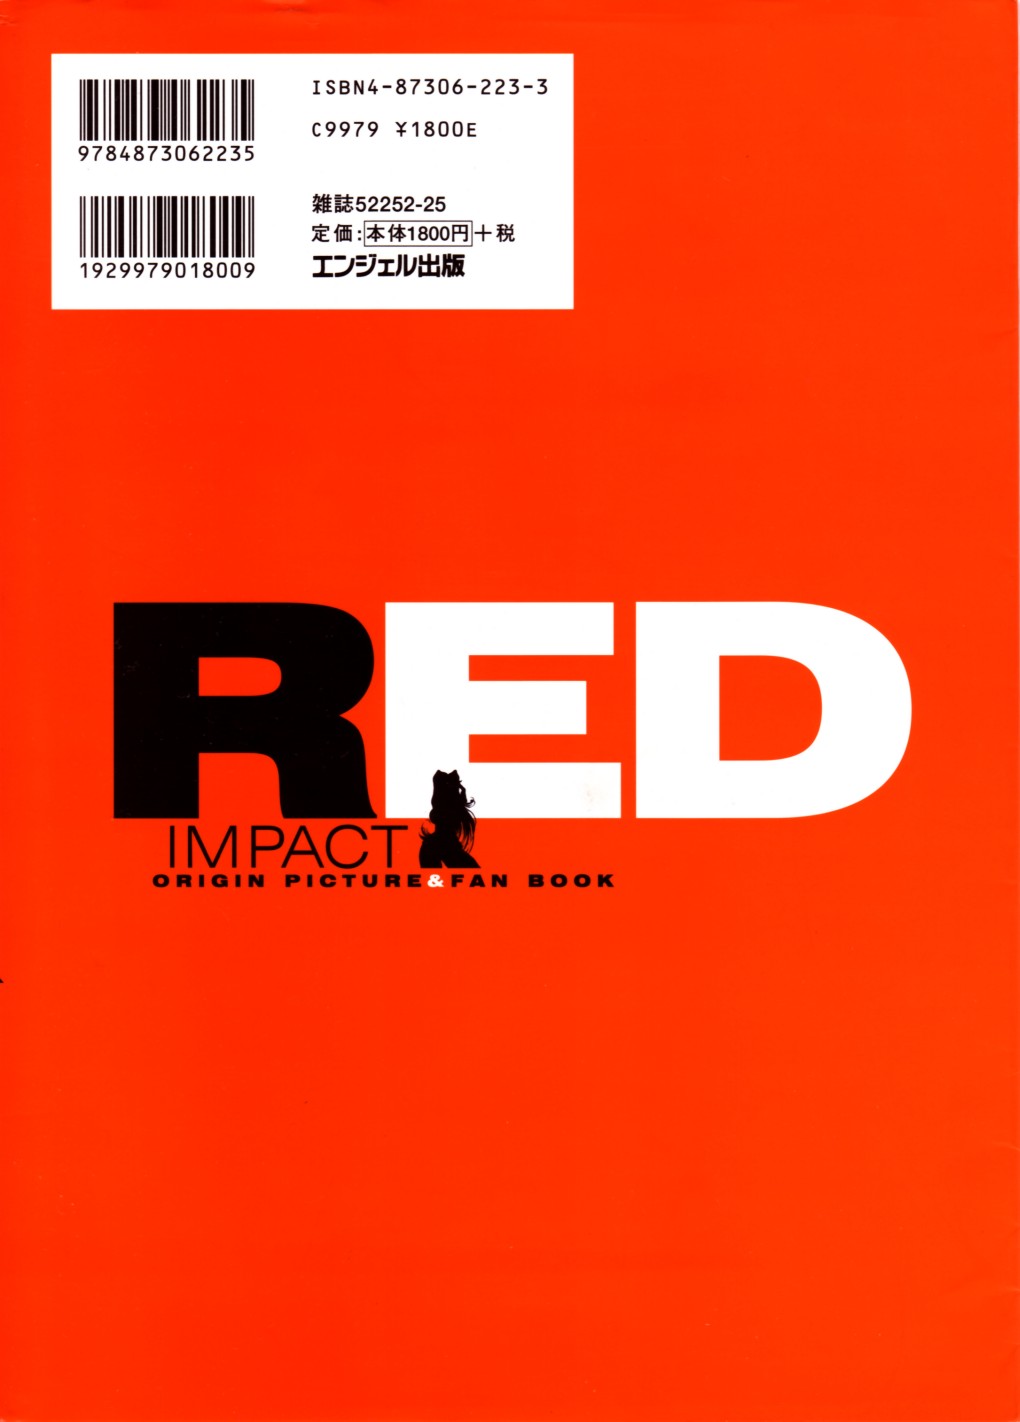 [あずき紅] RED IMPACT あずき紅原画集＆ファンブック